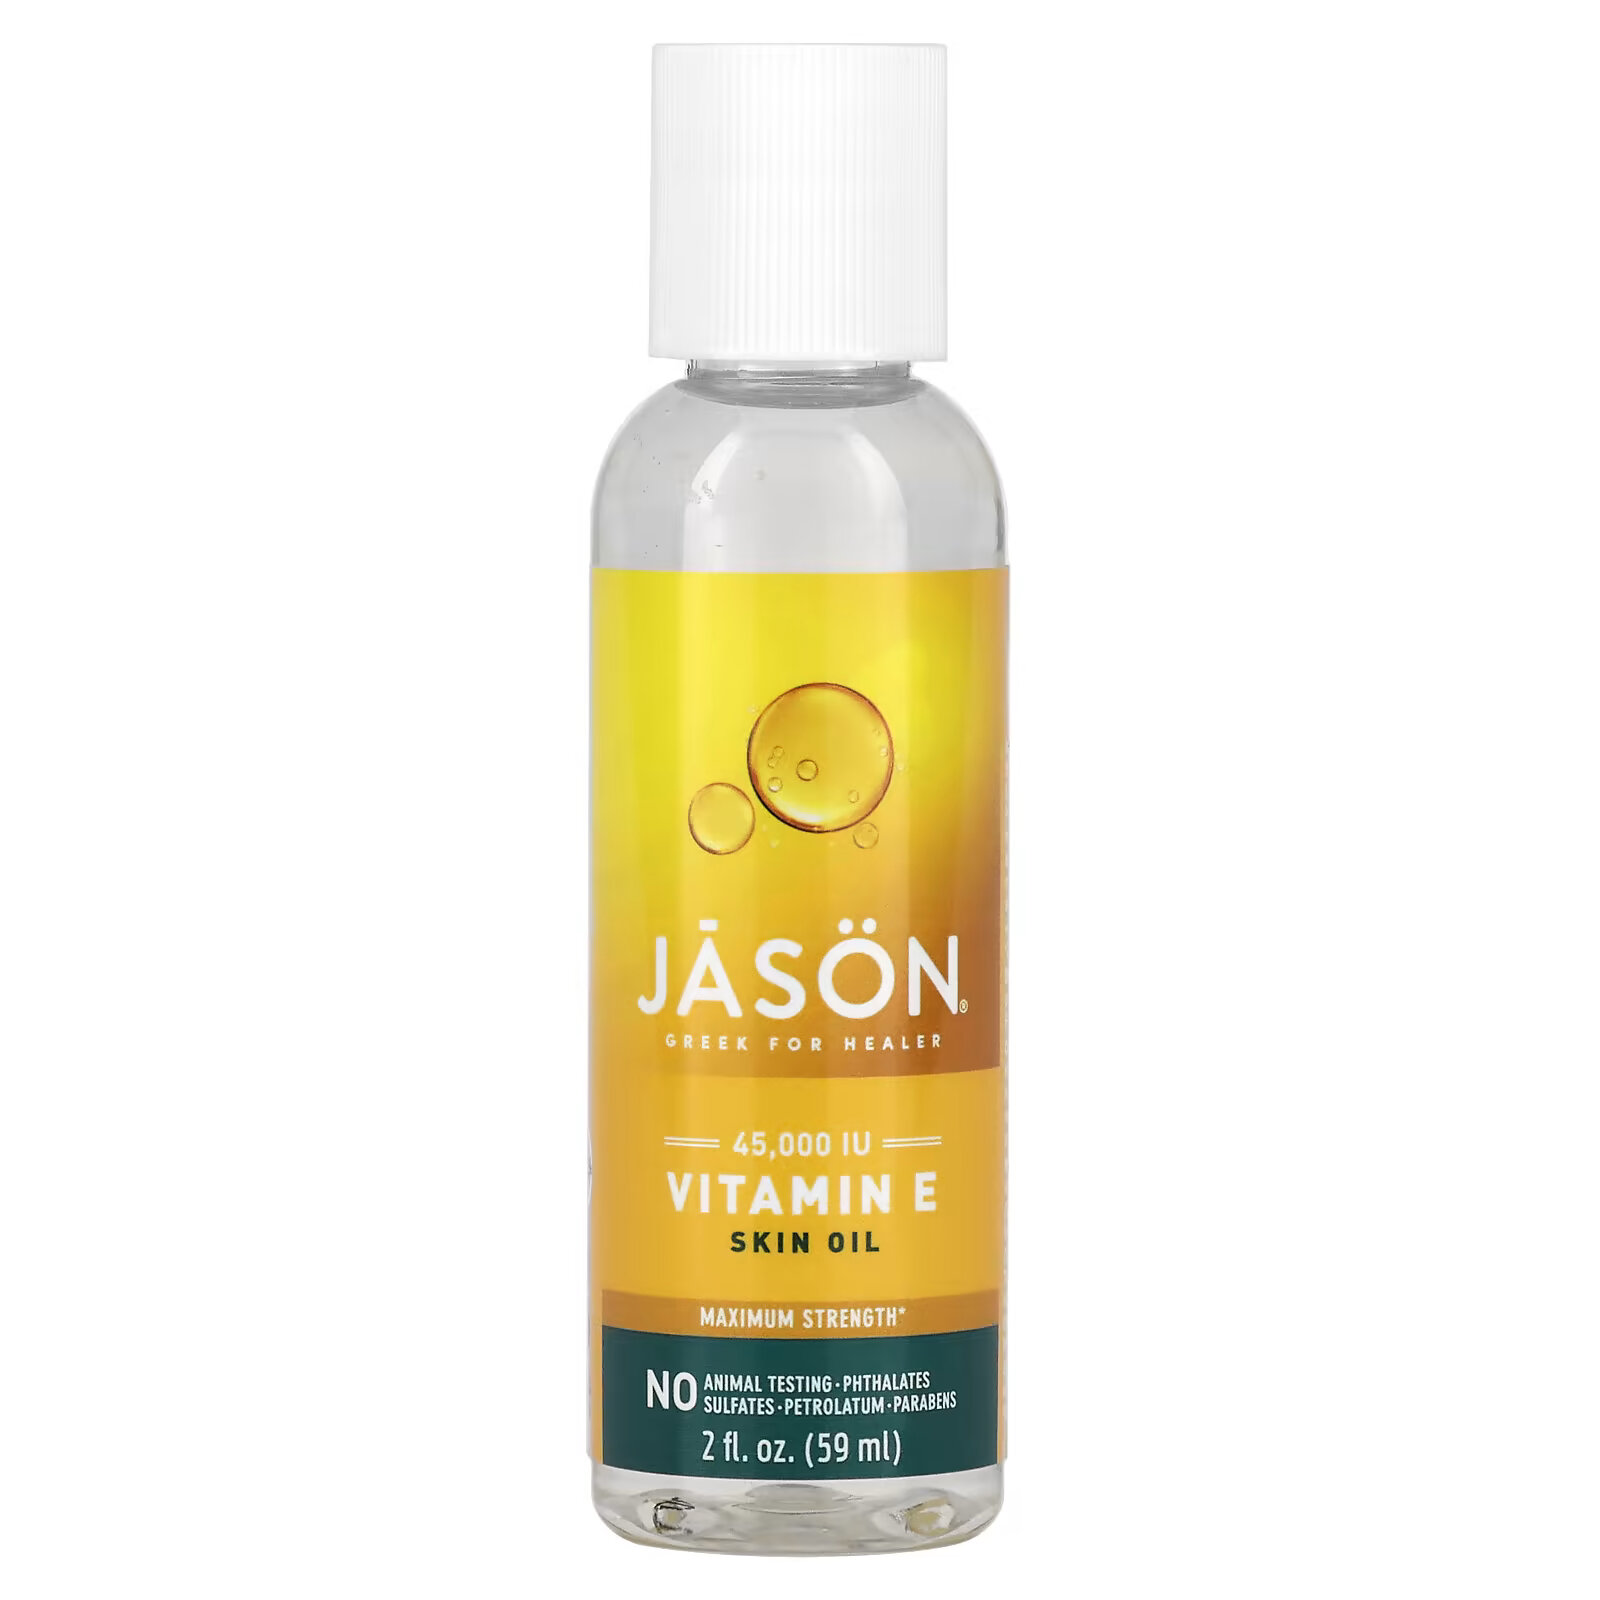 Jason Natural, Чистое натуральное масло для кожи, максимально эффективный витамин Е, 45 000 МЕ, 59 мл jason natural чистое натуральное масло для кожи максимально эффективный витамин е 45 000 ме 59 мл 2 жидких унции